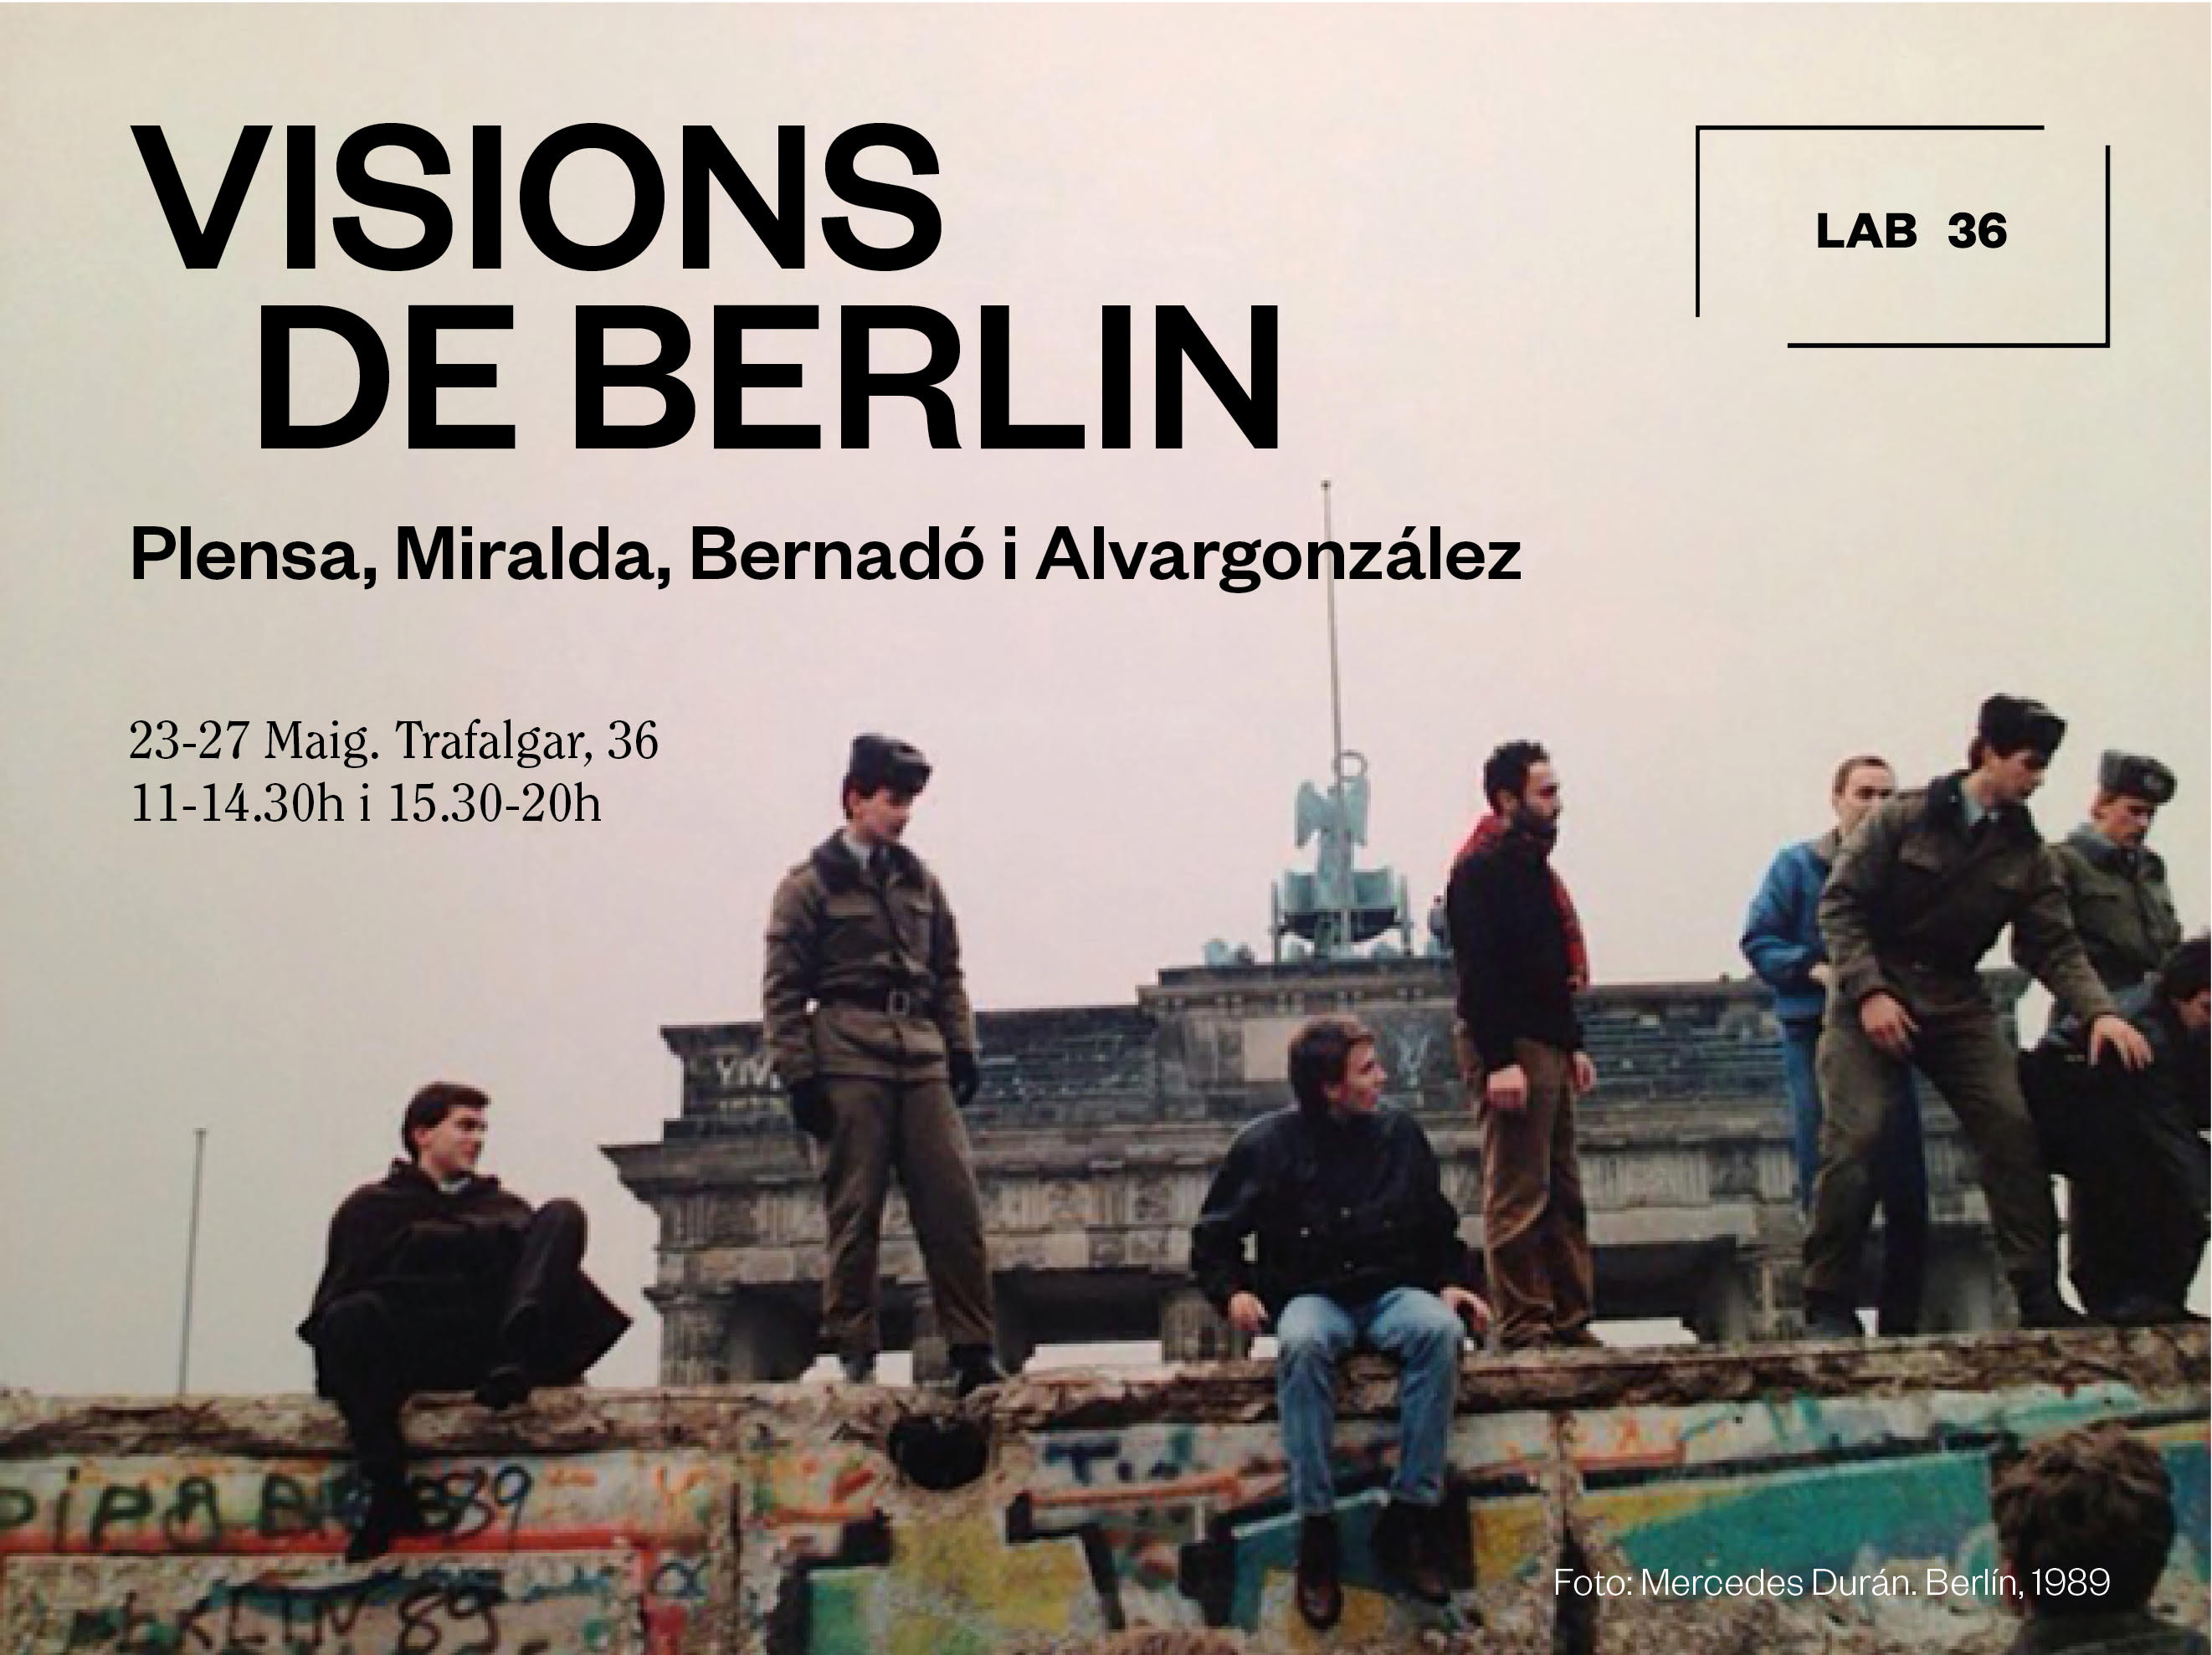 Invitation | Visions de Berlin: Plensa, Miralda, Bernardó i Alvargonzalez